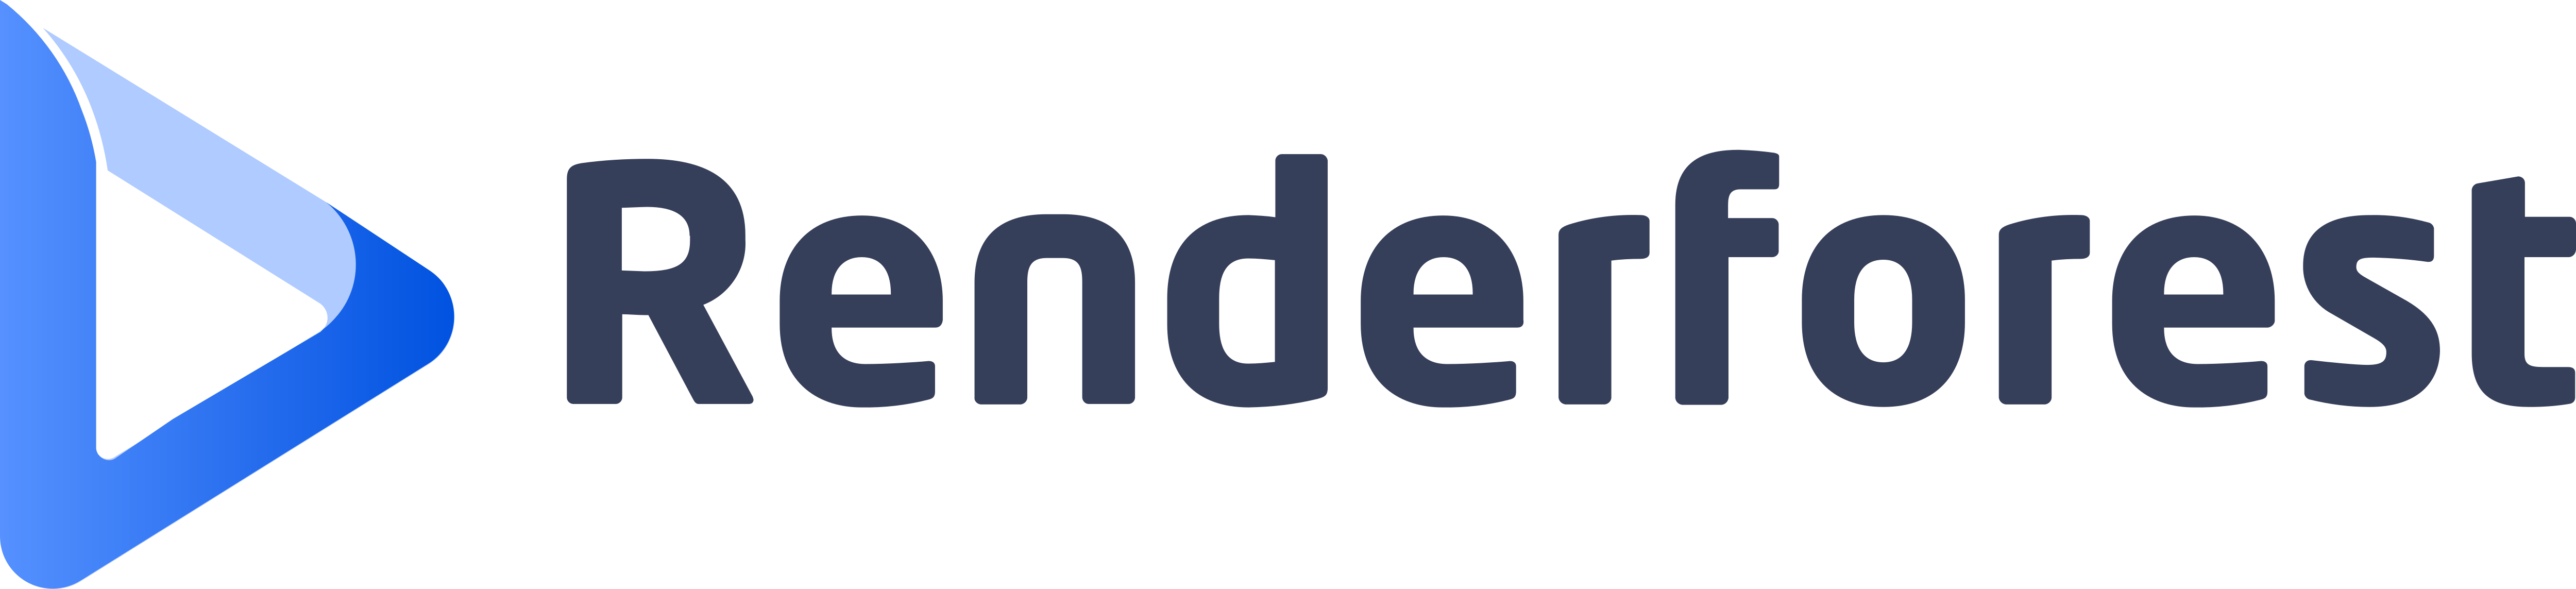 Renderforest_Logo